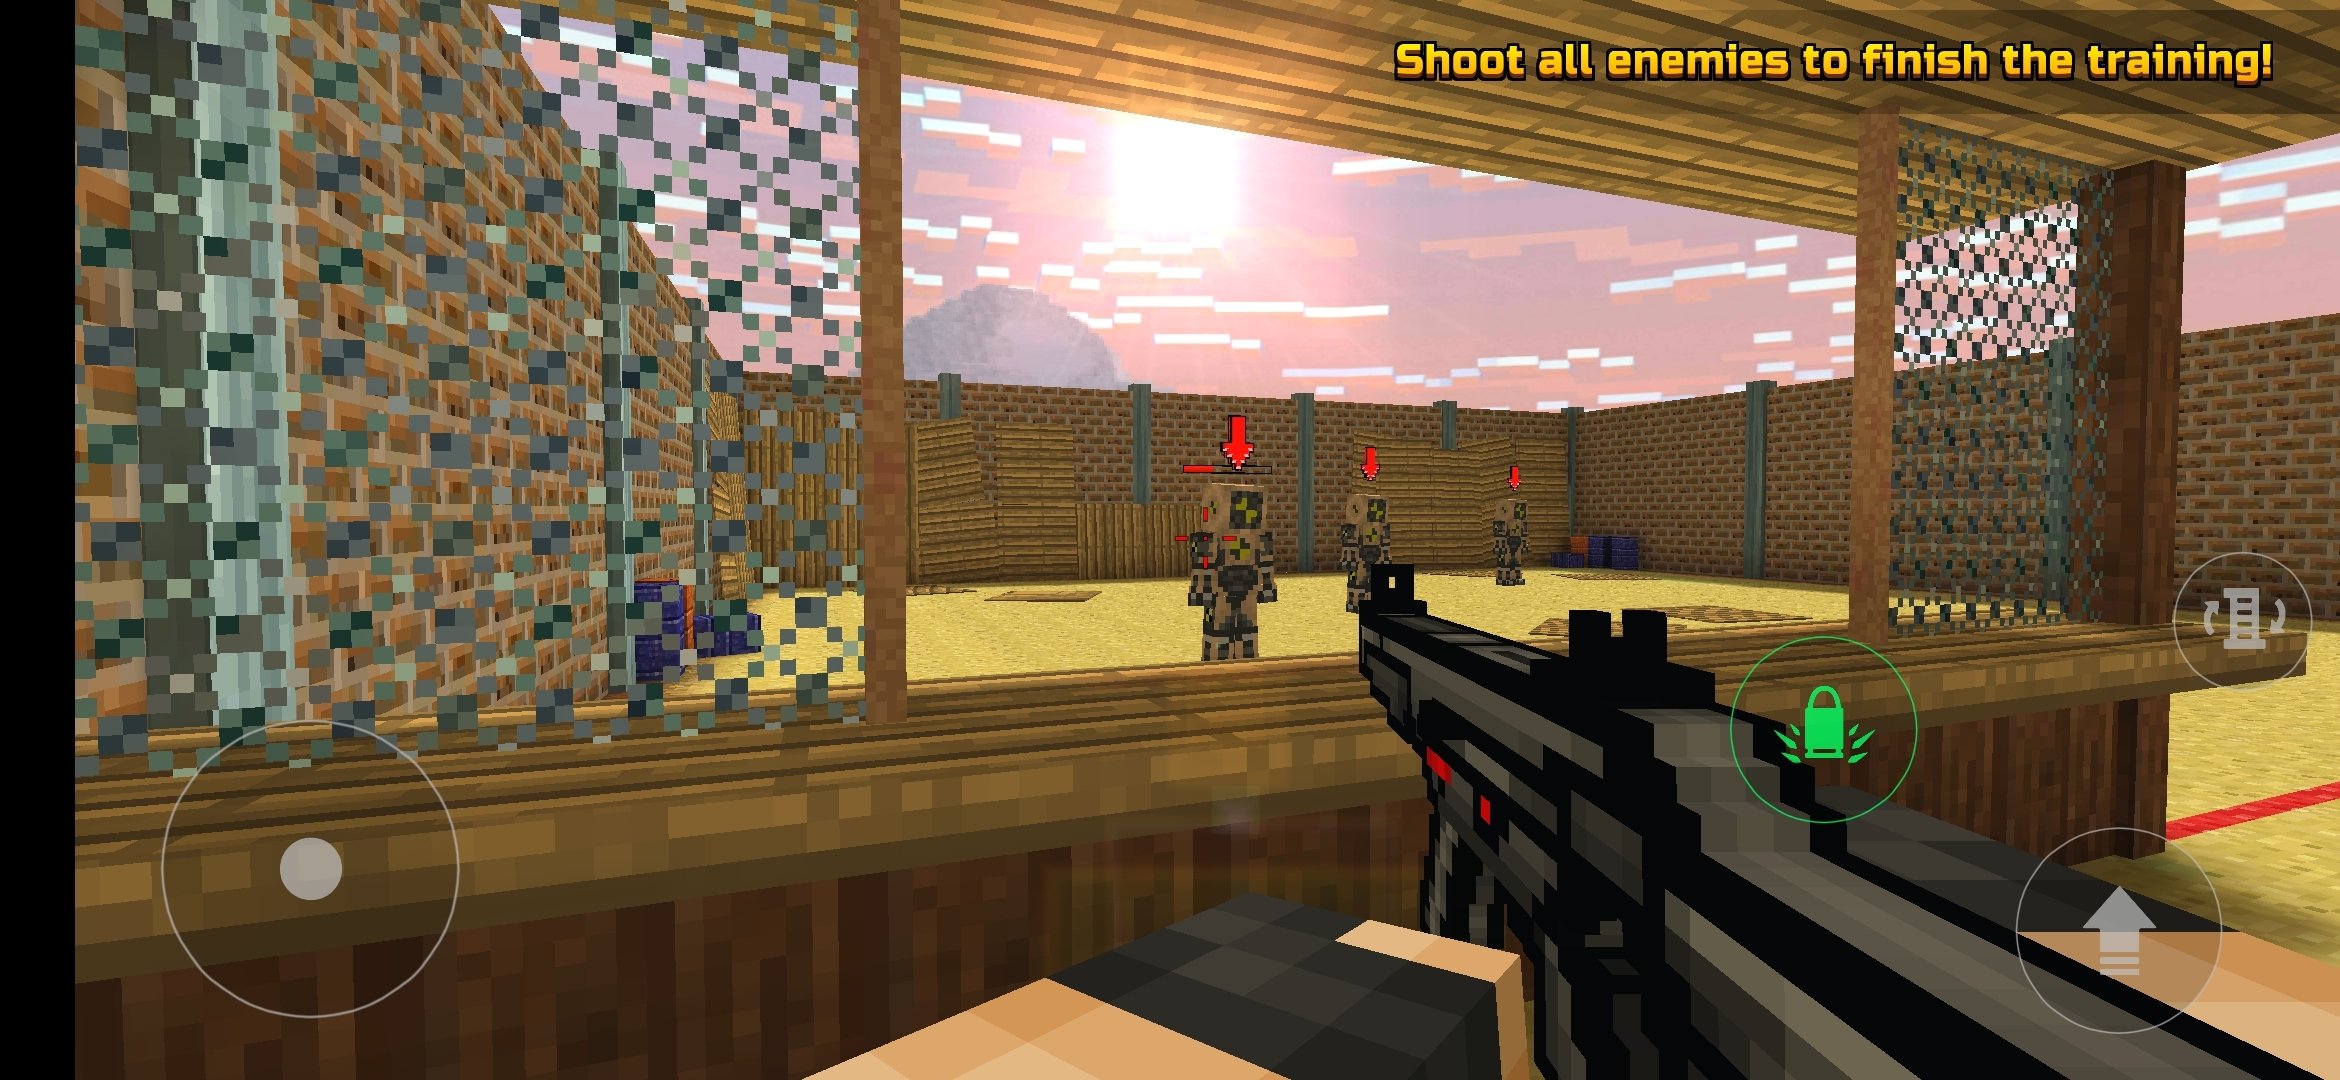 pixel gun 3d game online free play